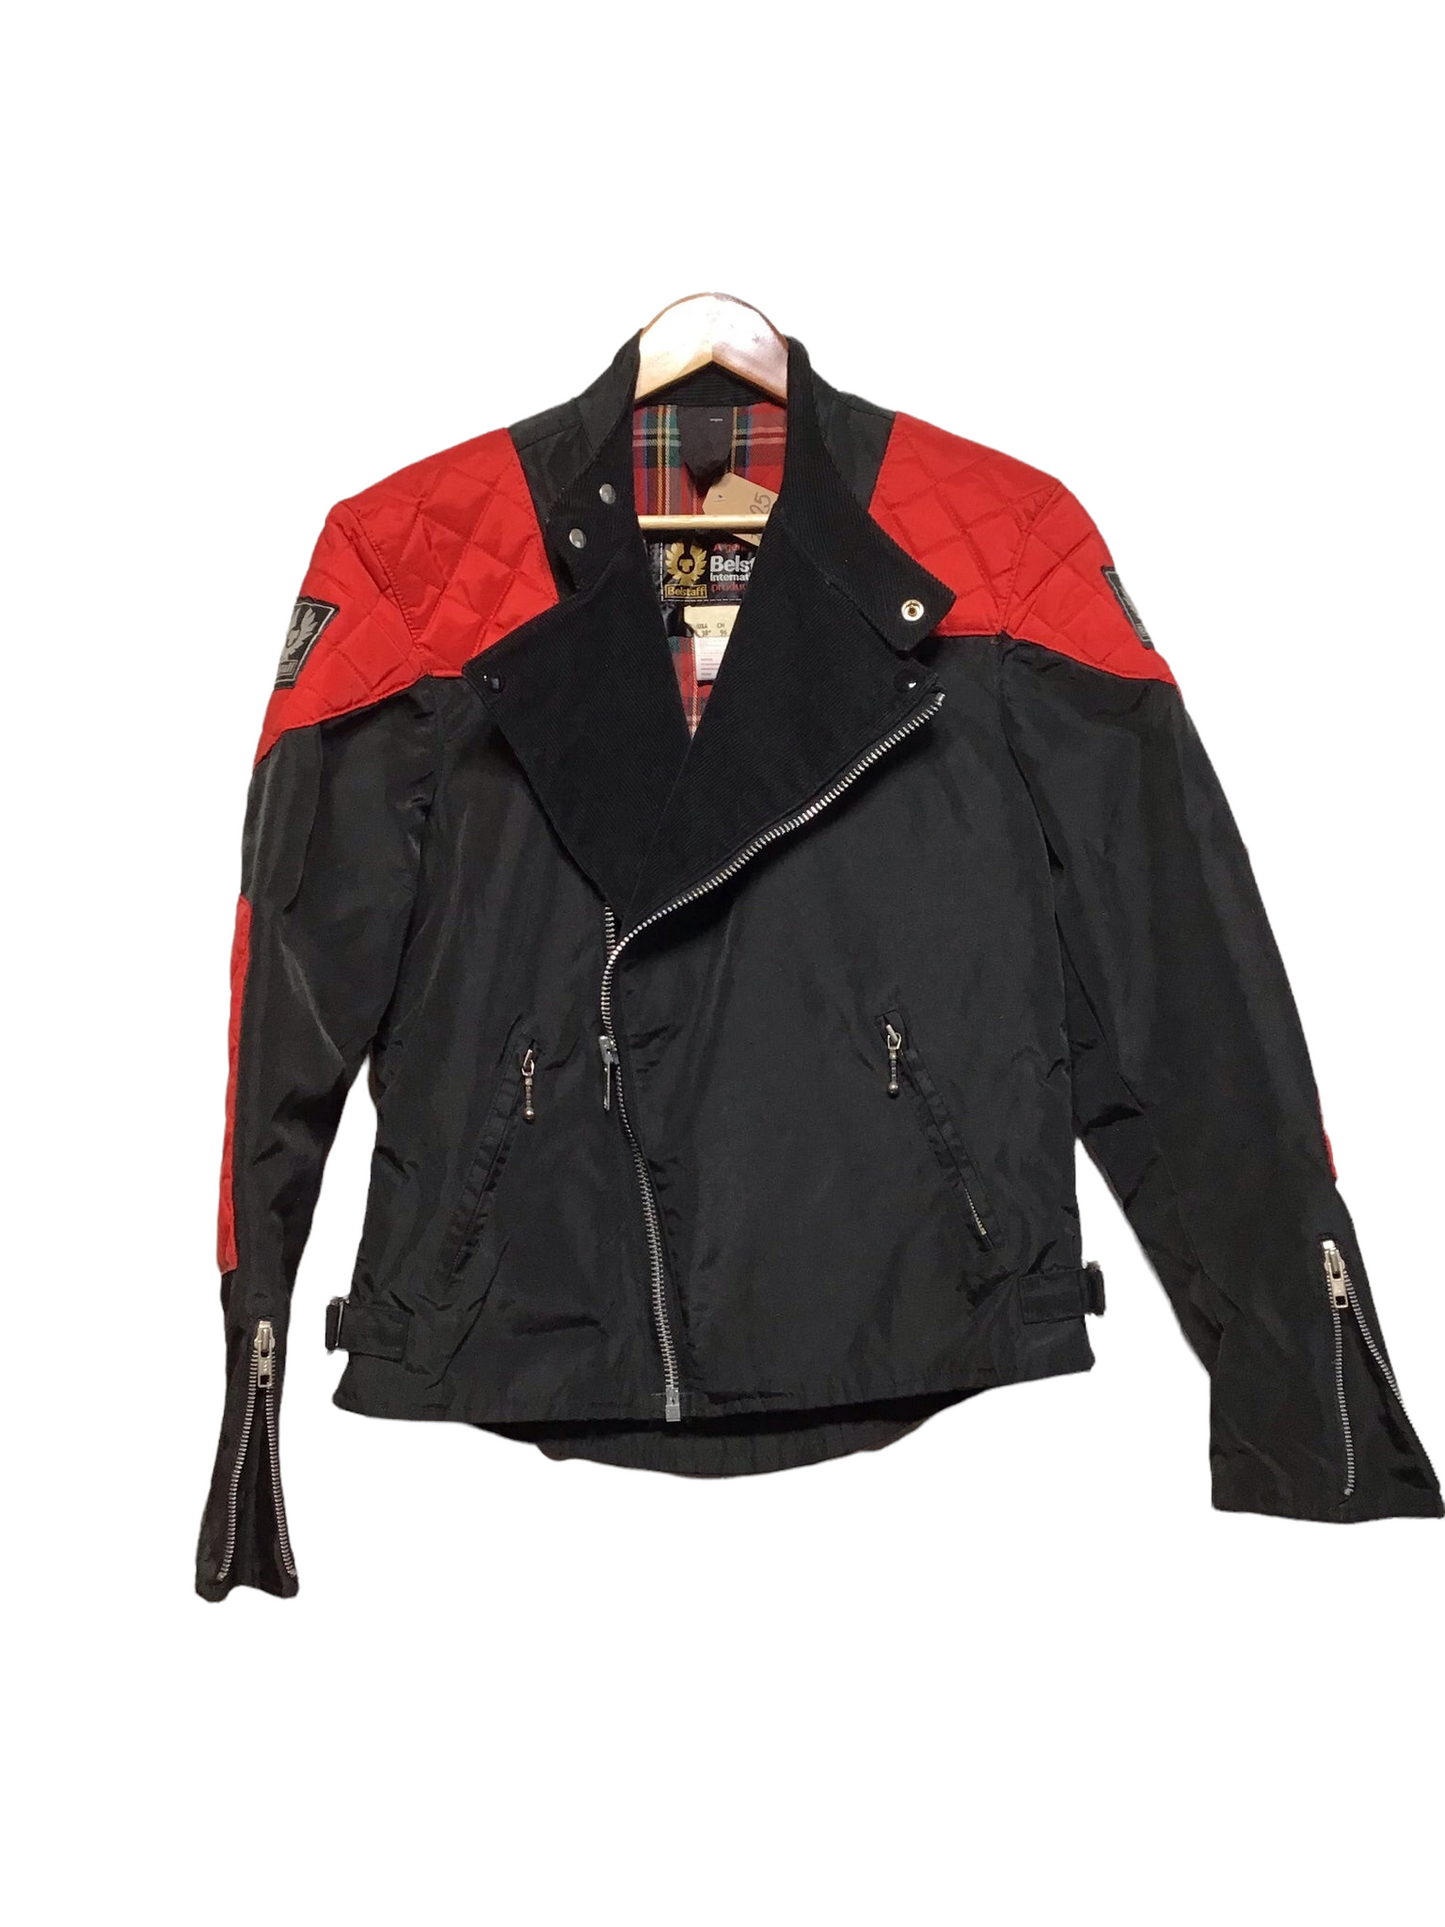 Belstaff Biker Jacket (Size M)